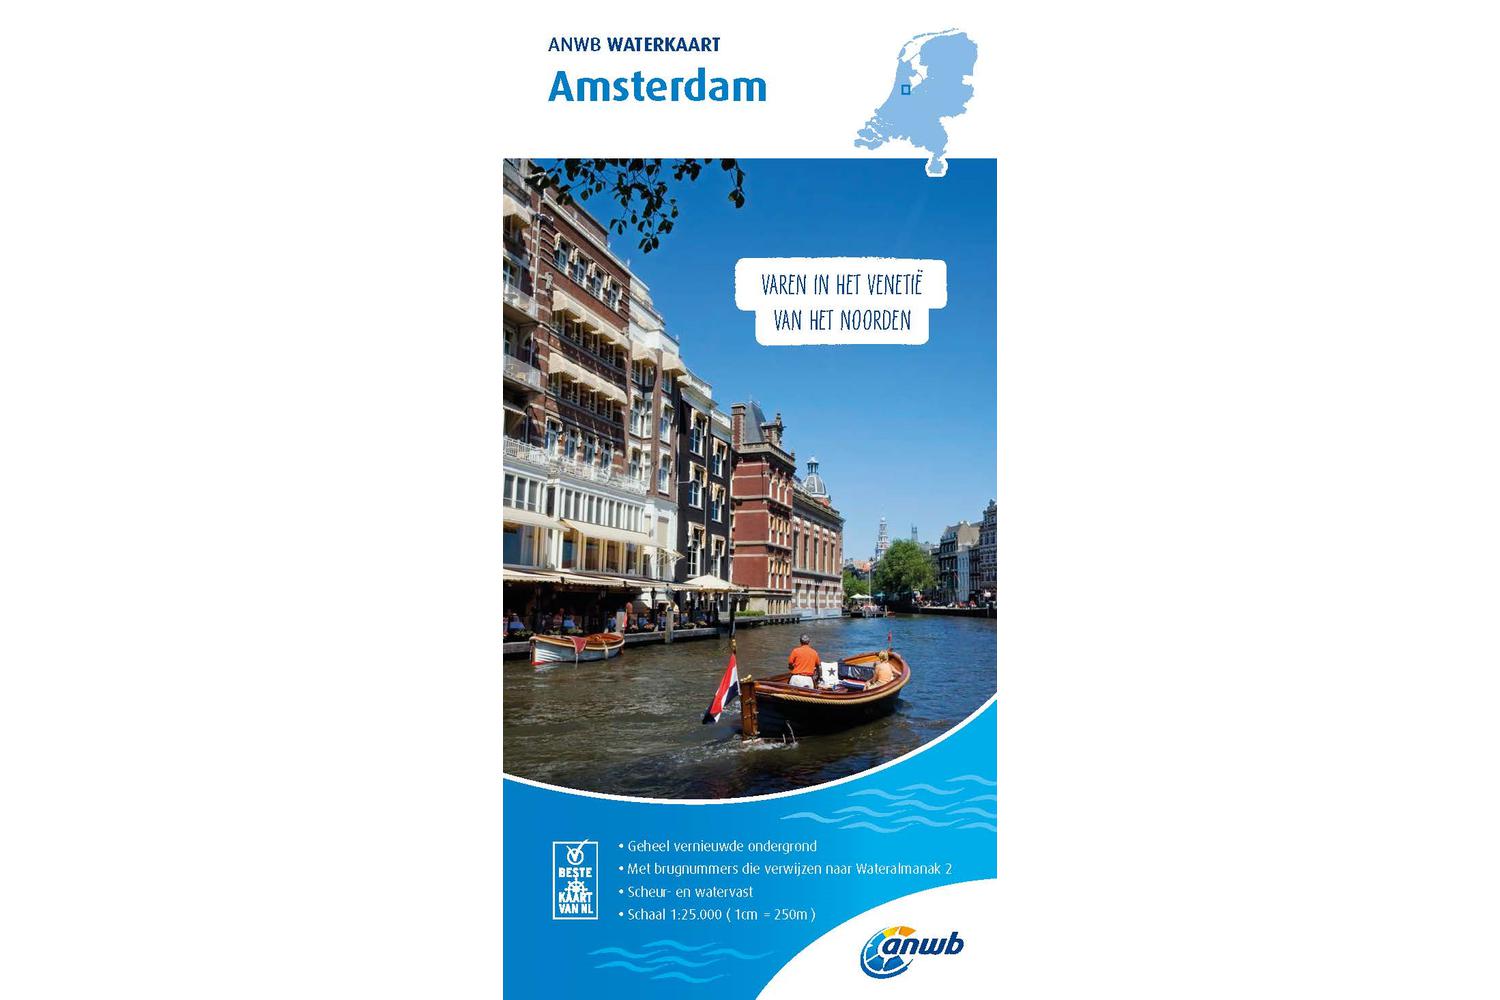 ANWB - Waterkaart Amsterdam